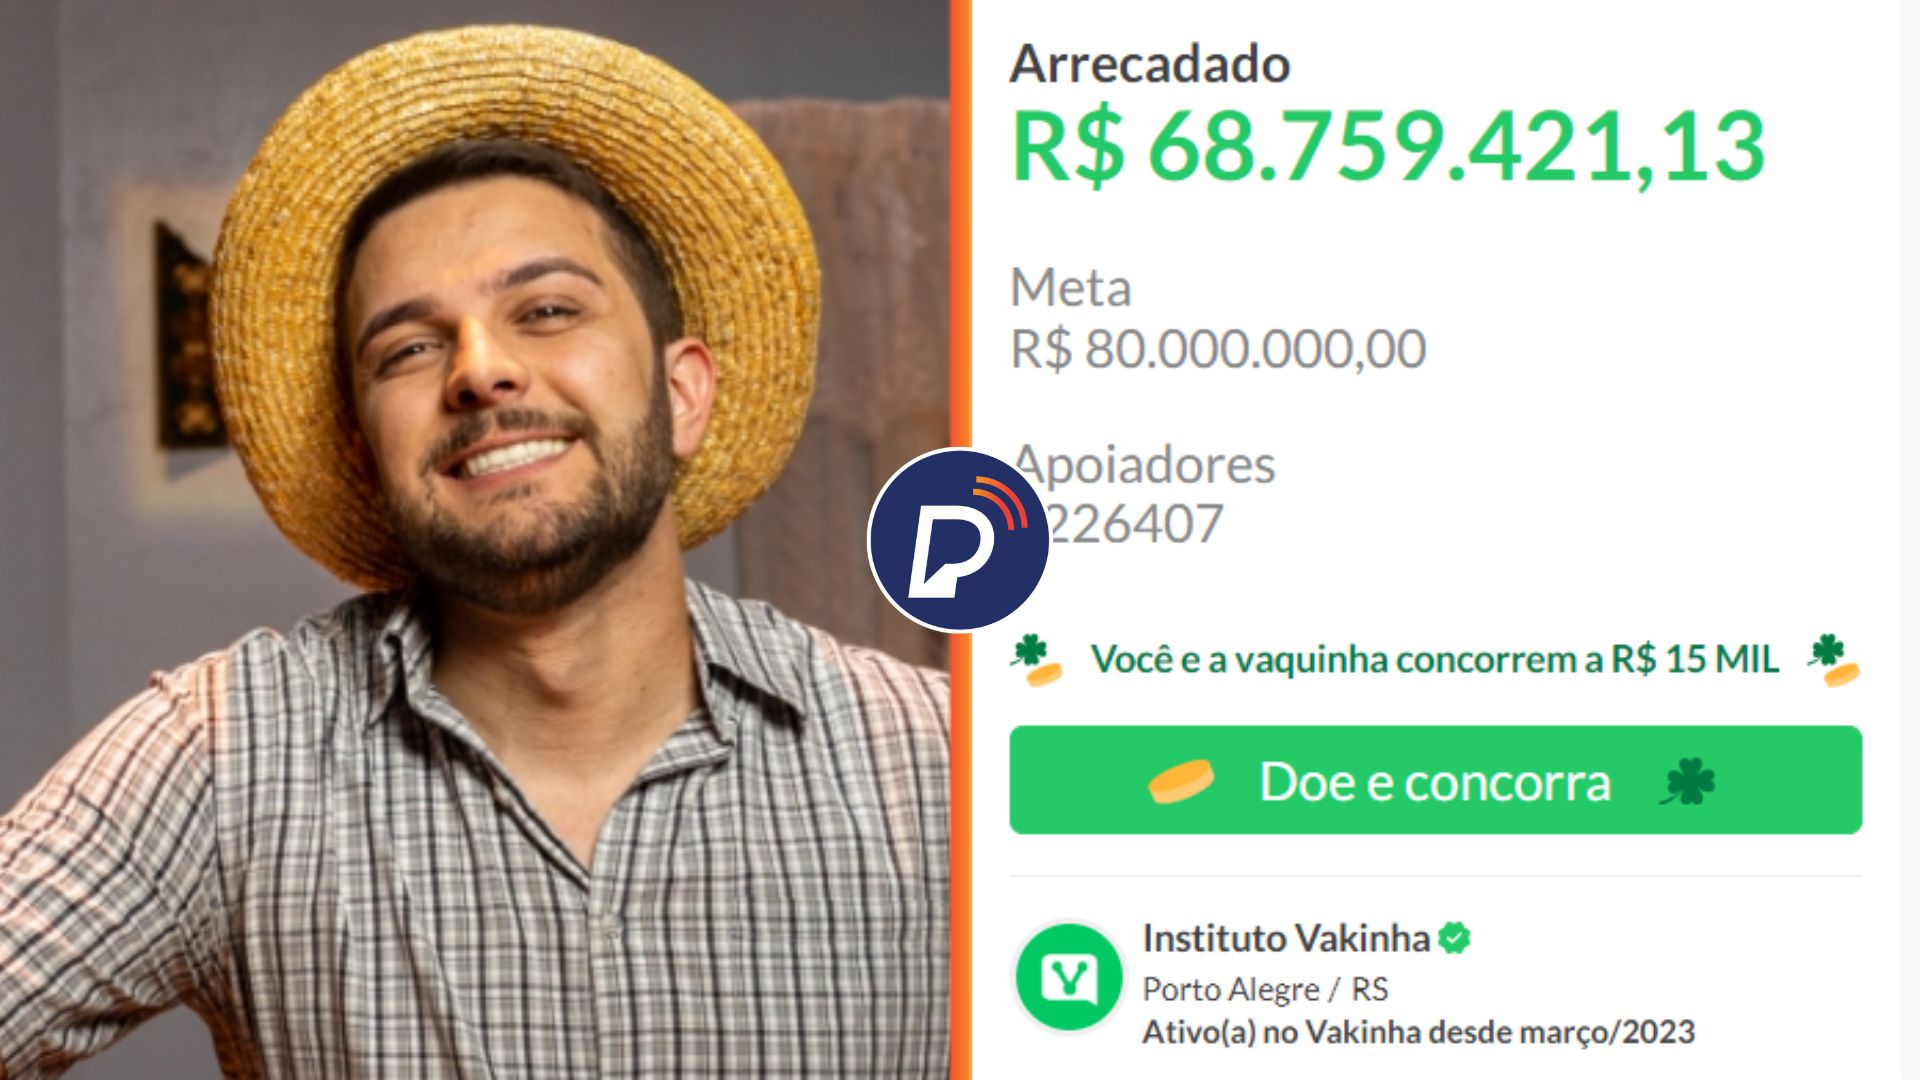 Humorista Badin arrecada R$ 68 MILHÕES em doações para ajudar cidades do Rio Grande do Sul.